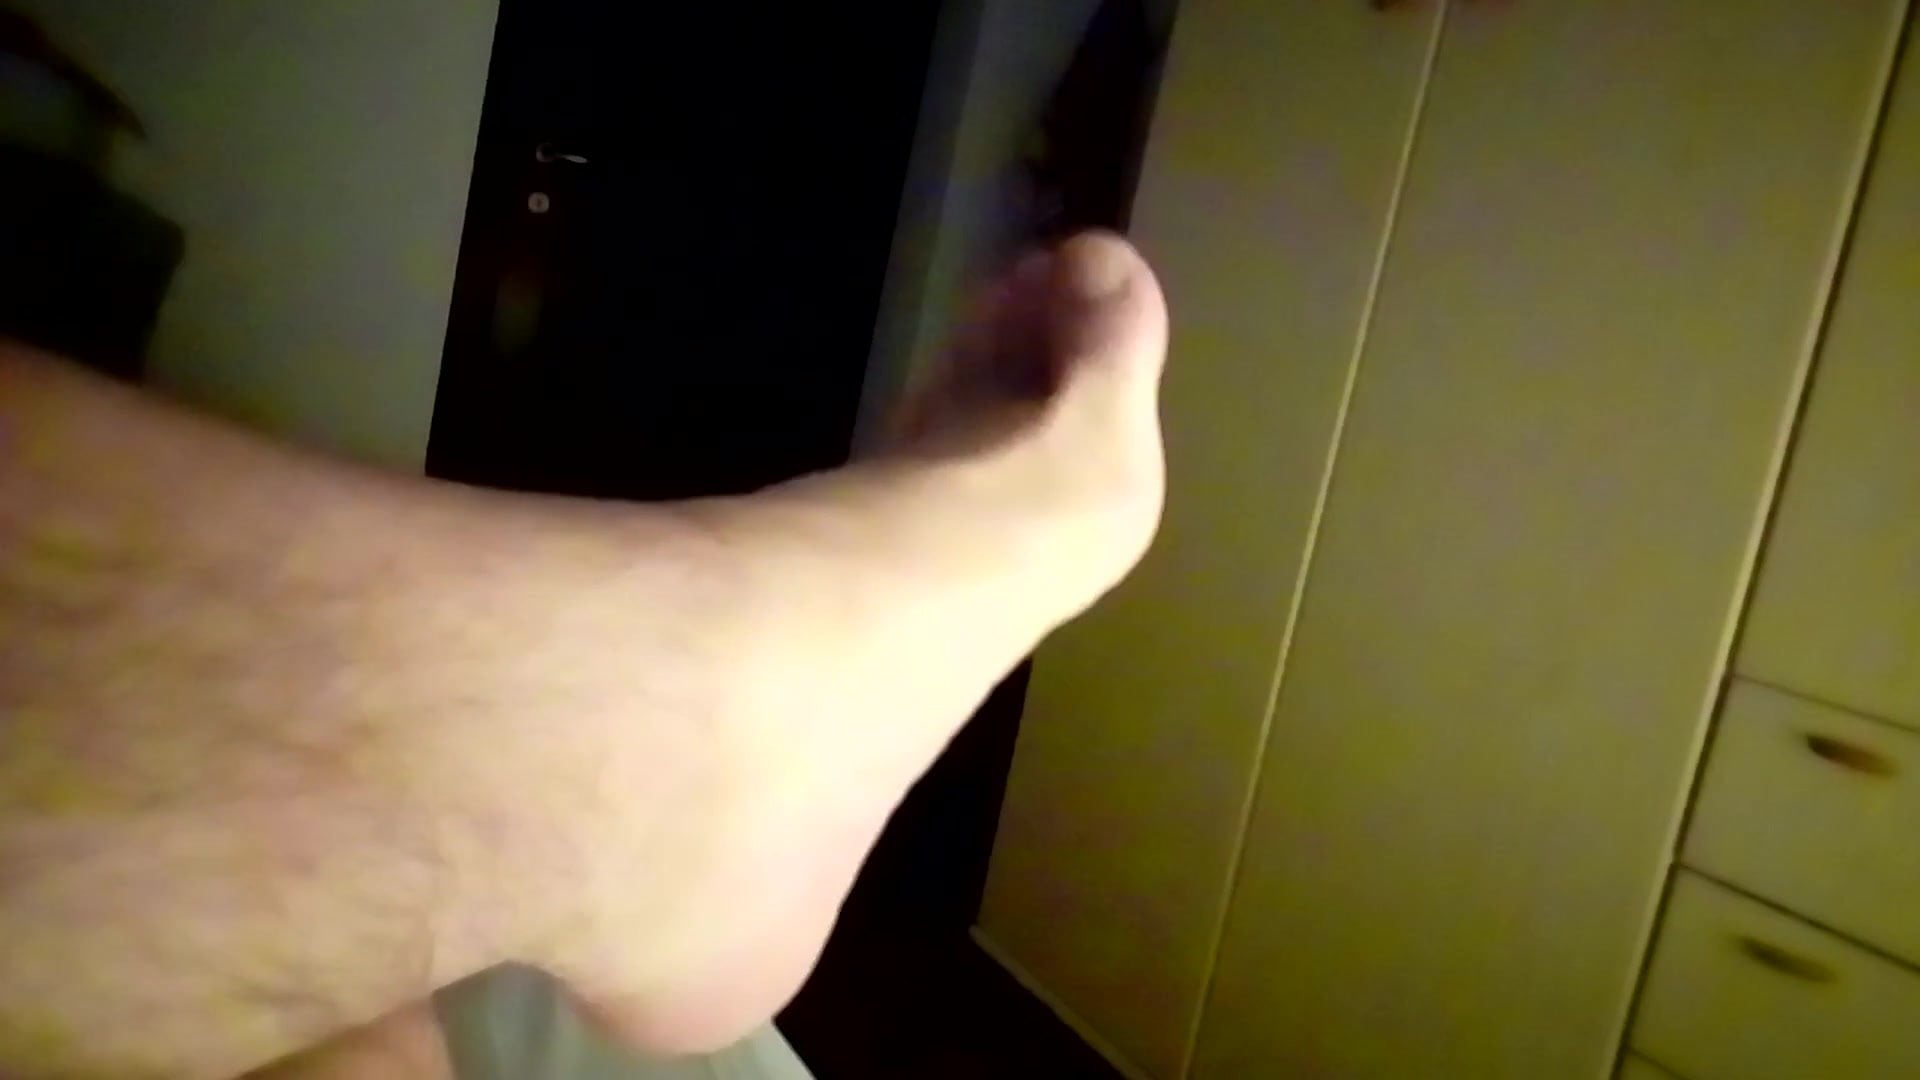 Kocalos - My legs and feet